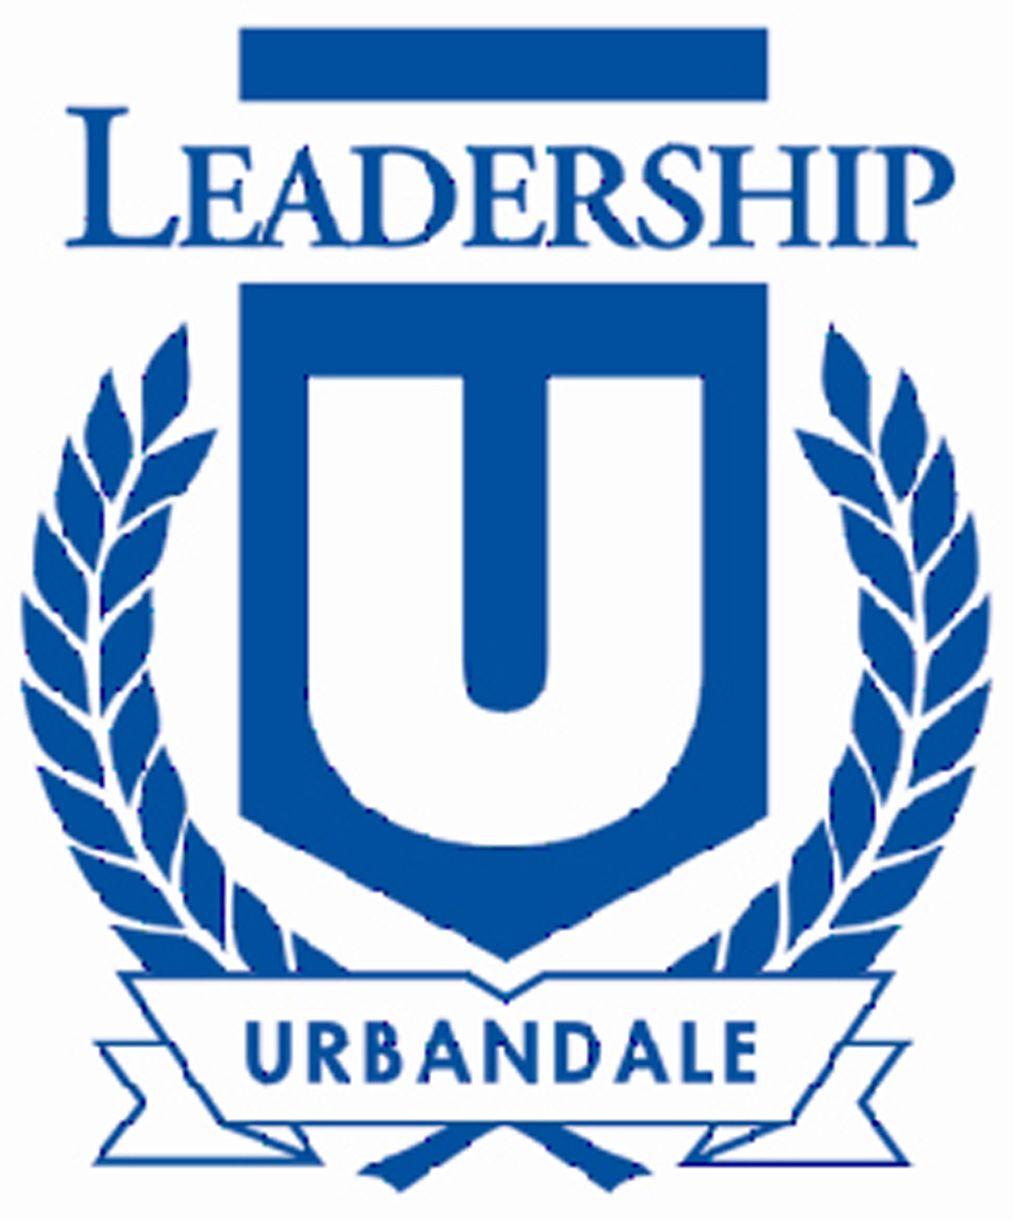 Urbandale Logo - Leadership Urbandale/Citizen University